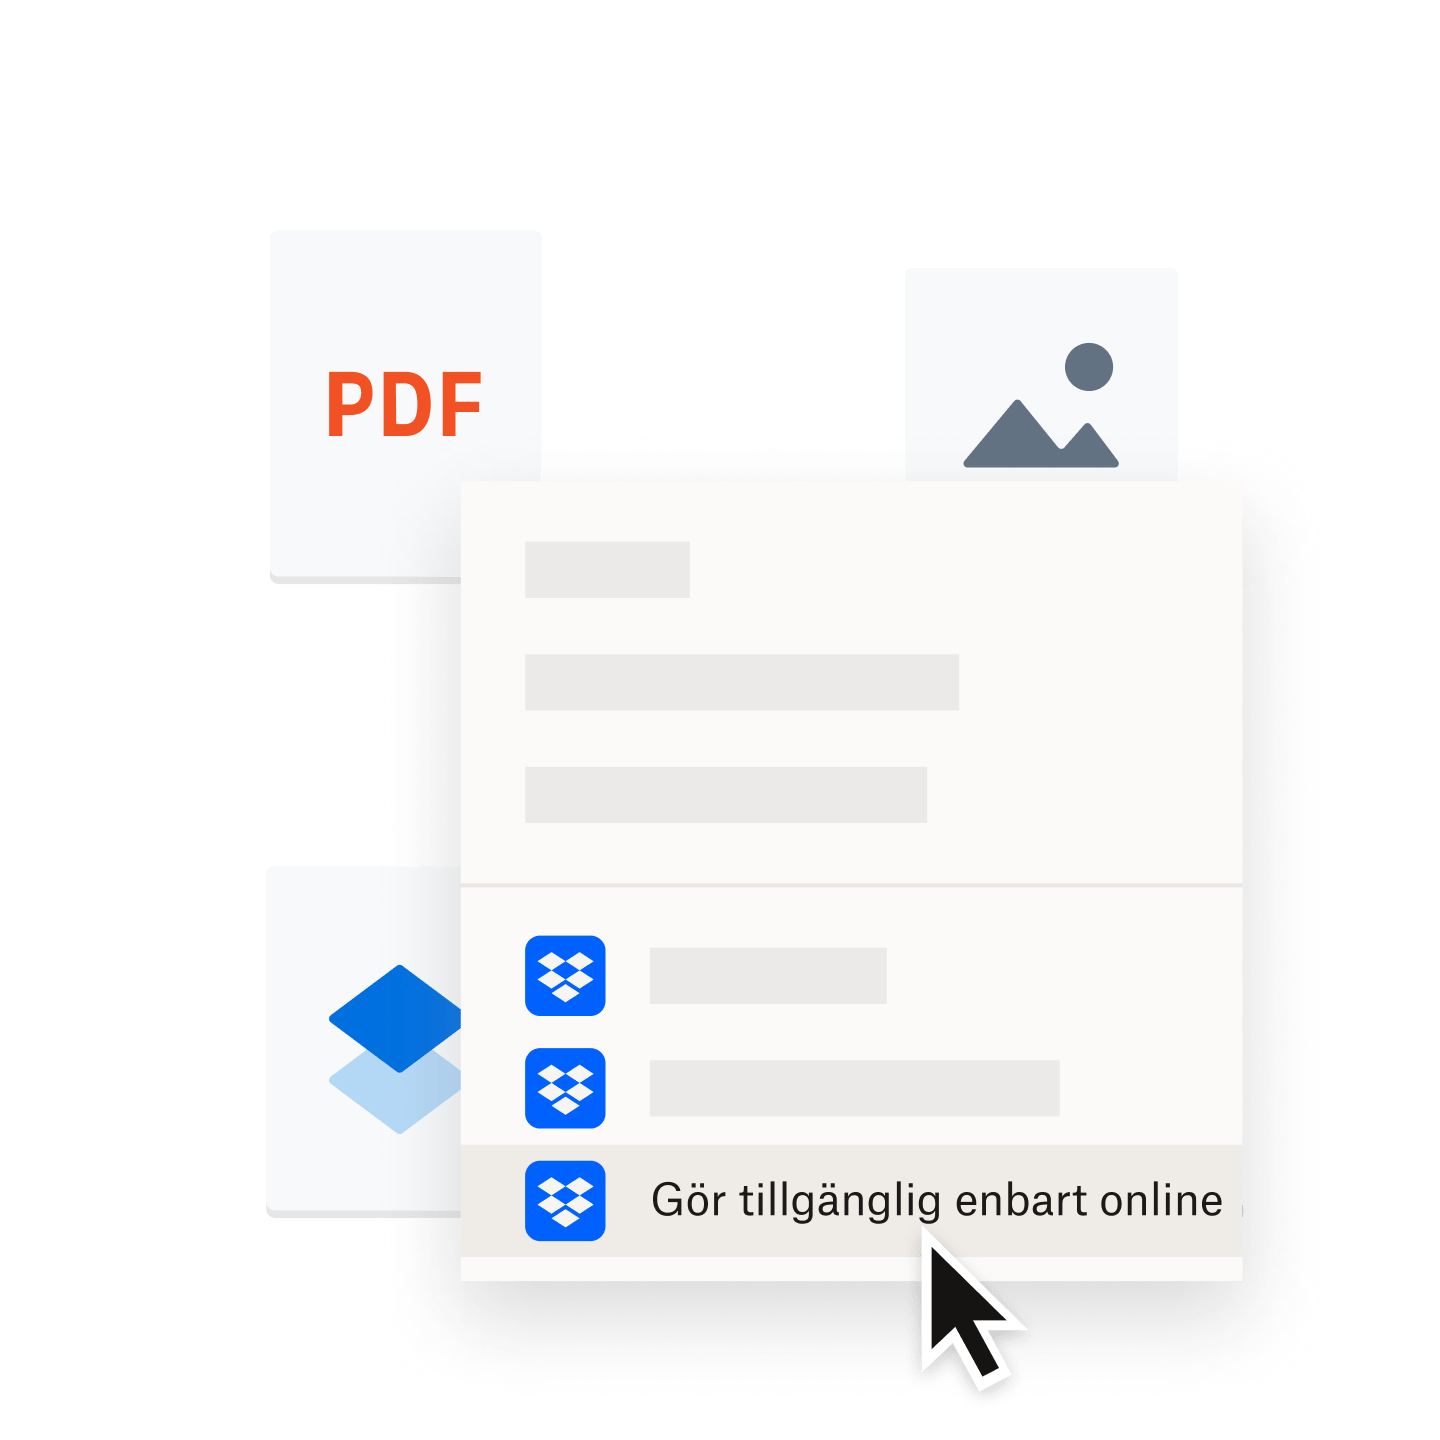 PDF-fil som sparats i en Dropbox-mapp som är markerad som ”enbart online”